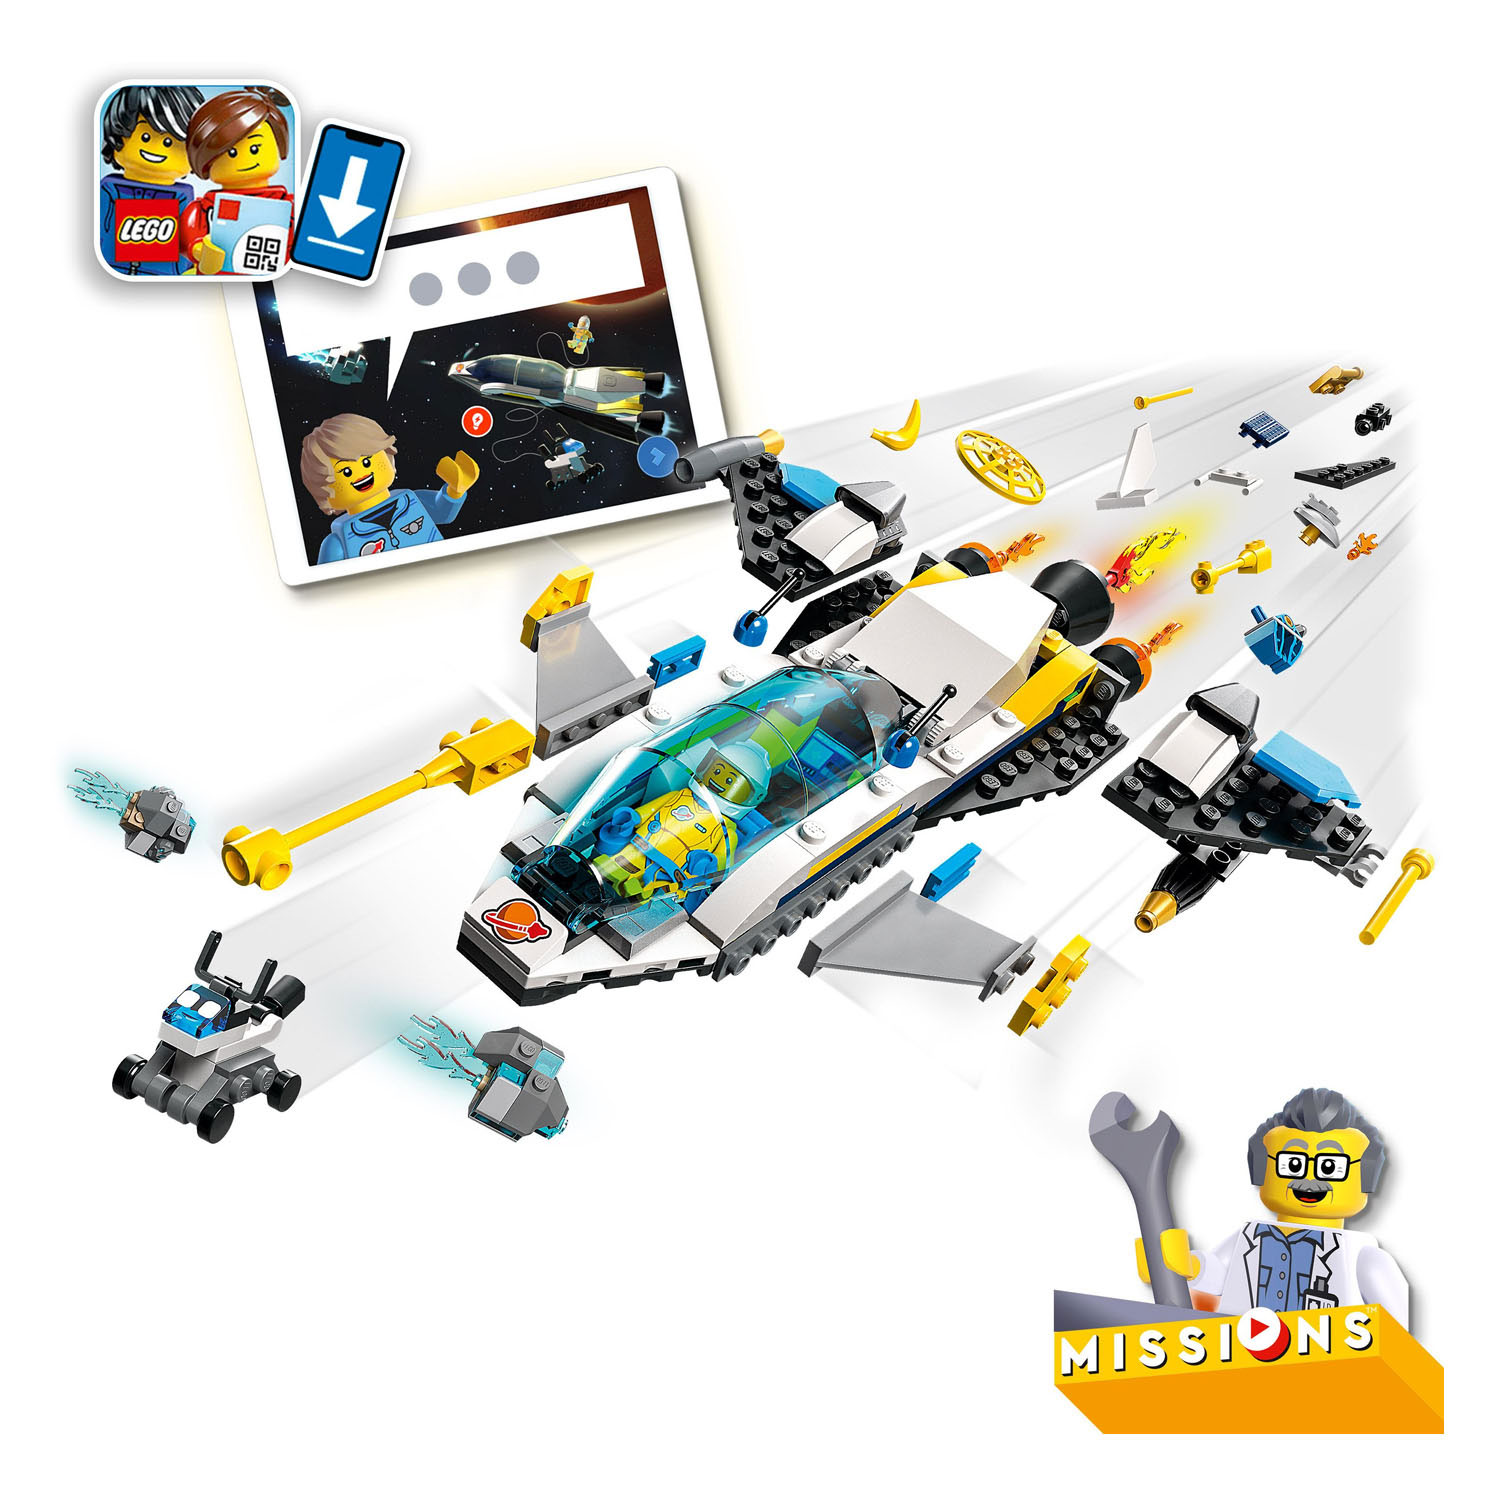 LEGO City 60354 Mars Ruimtevaartuig Verkenningsmissies